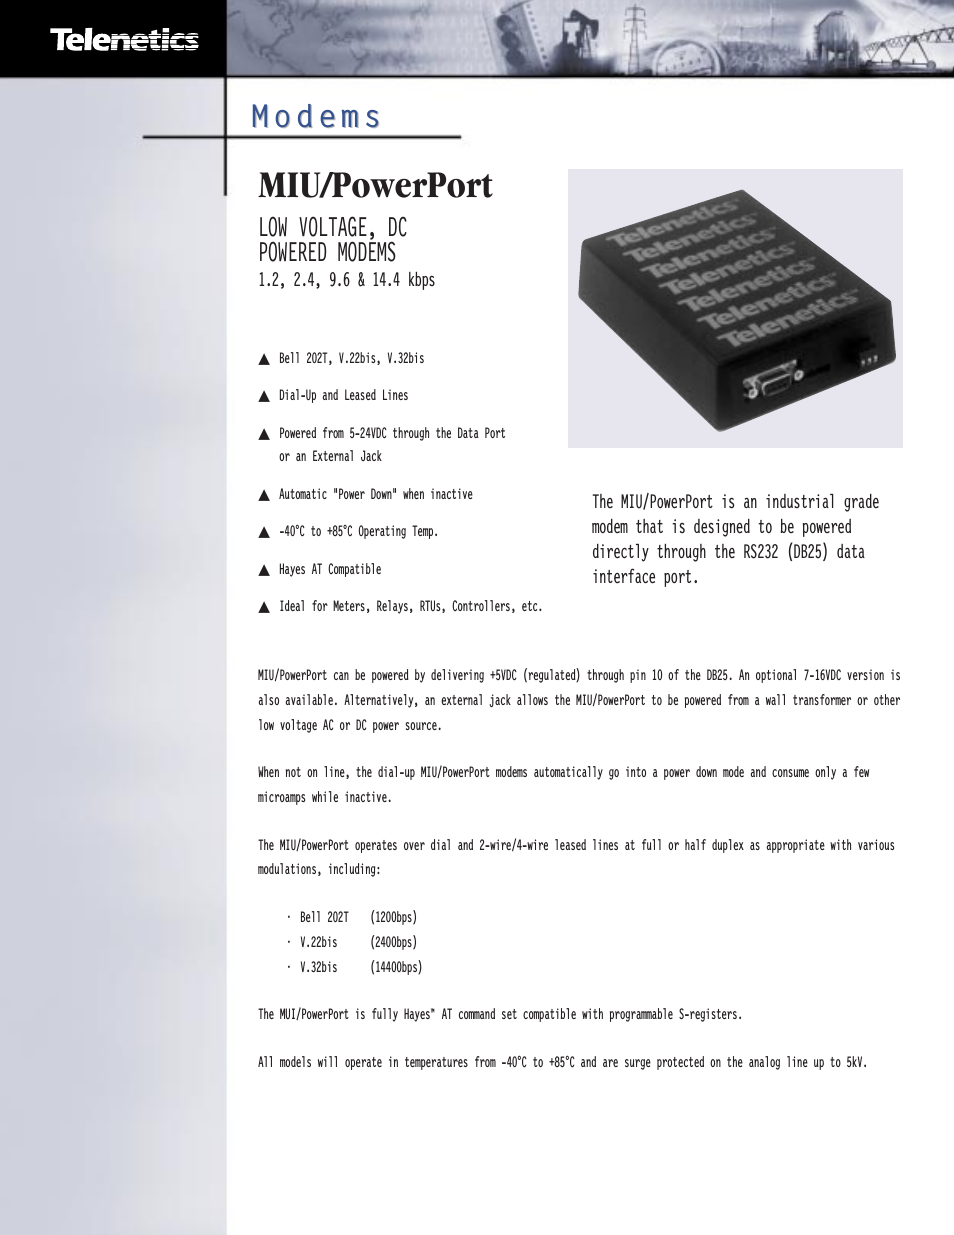 MIU/PowerPort Series 2.4